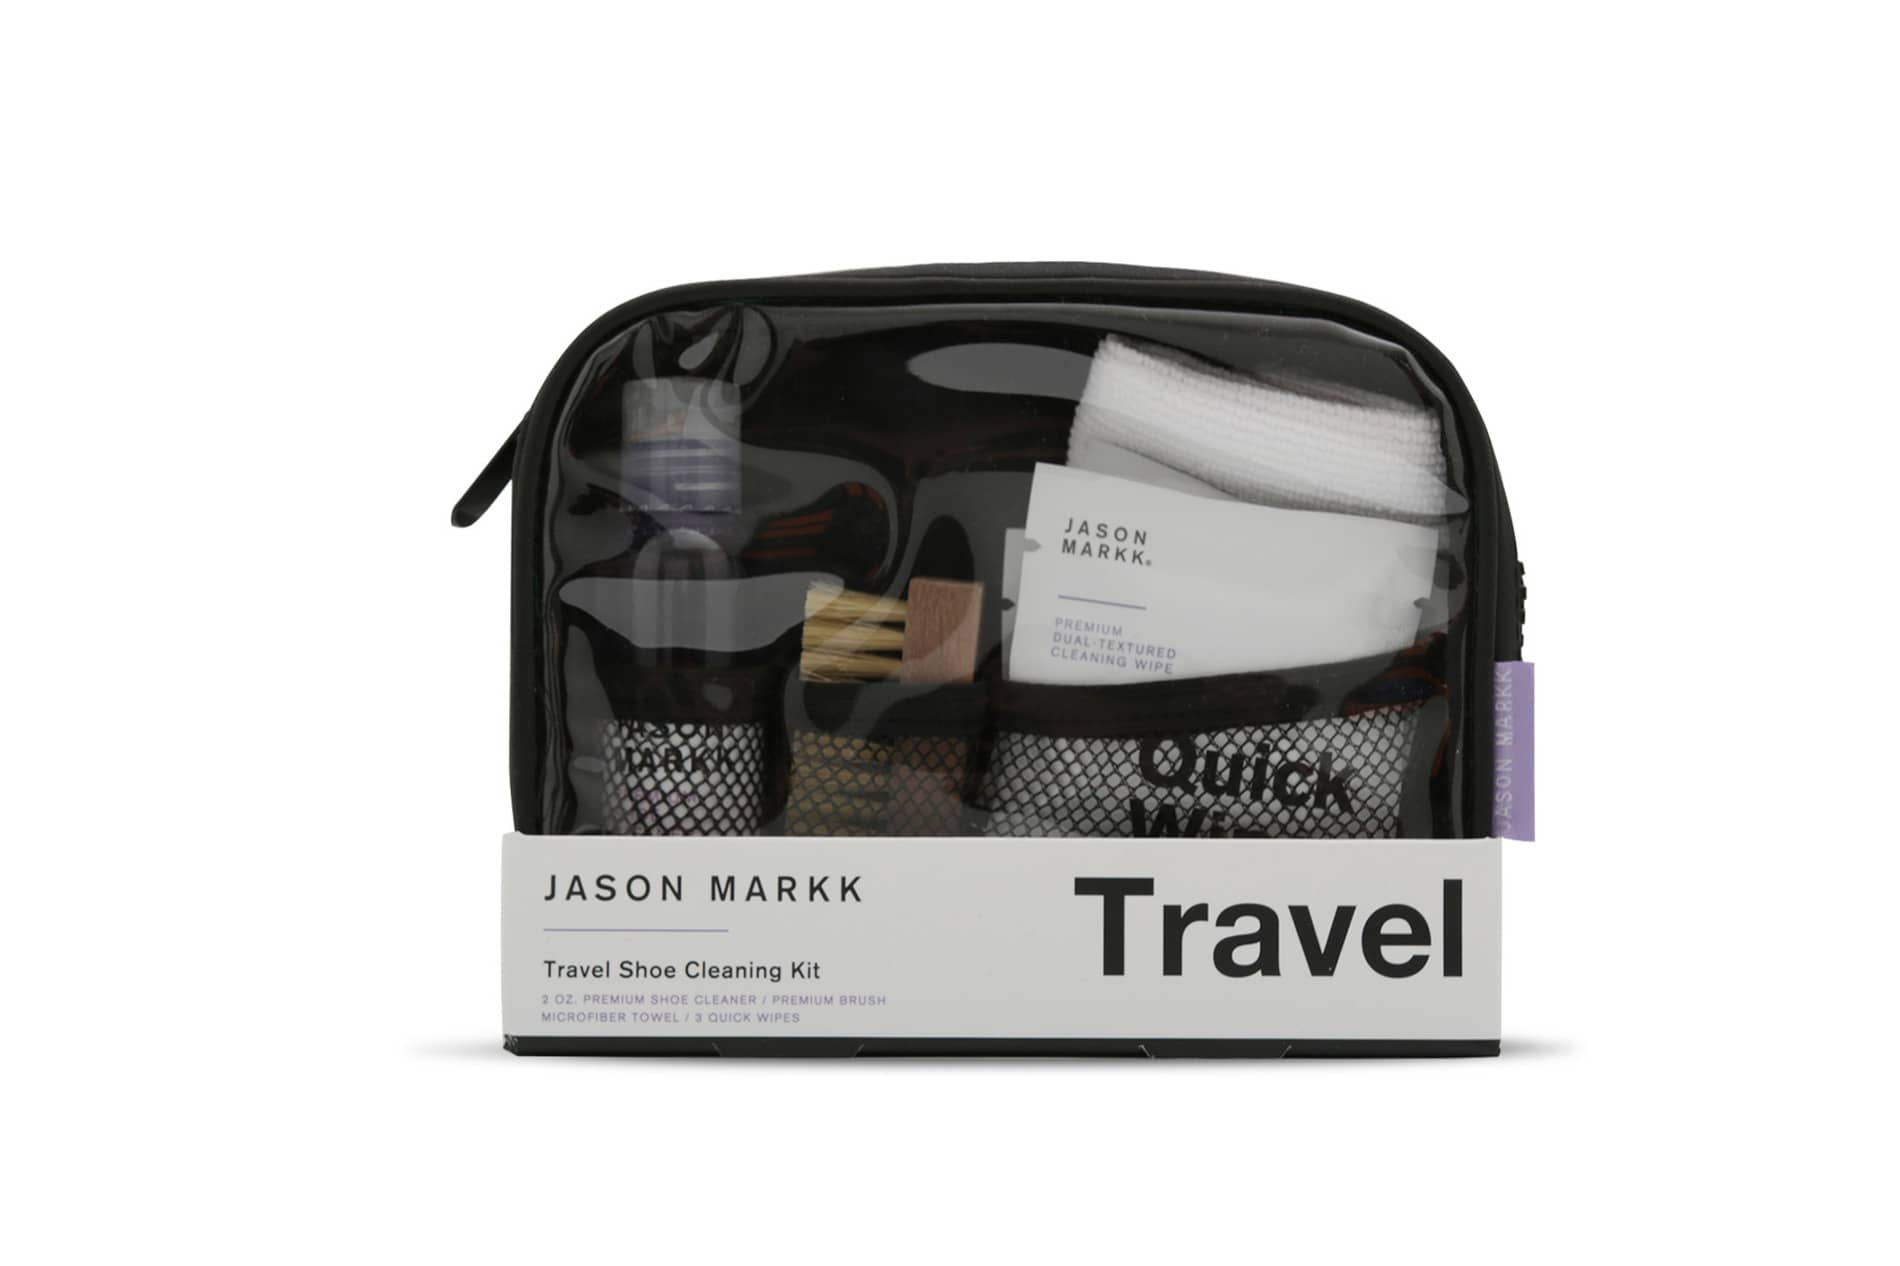 Jason Markk Travel Shoe Cleaning Kit | Shelflife